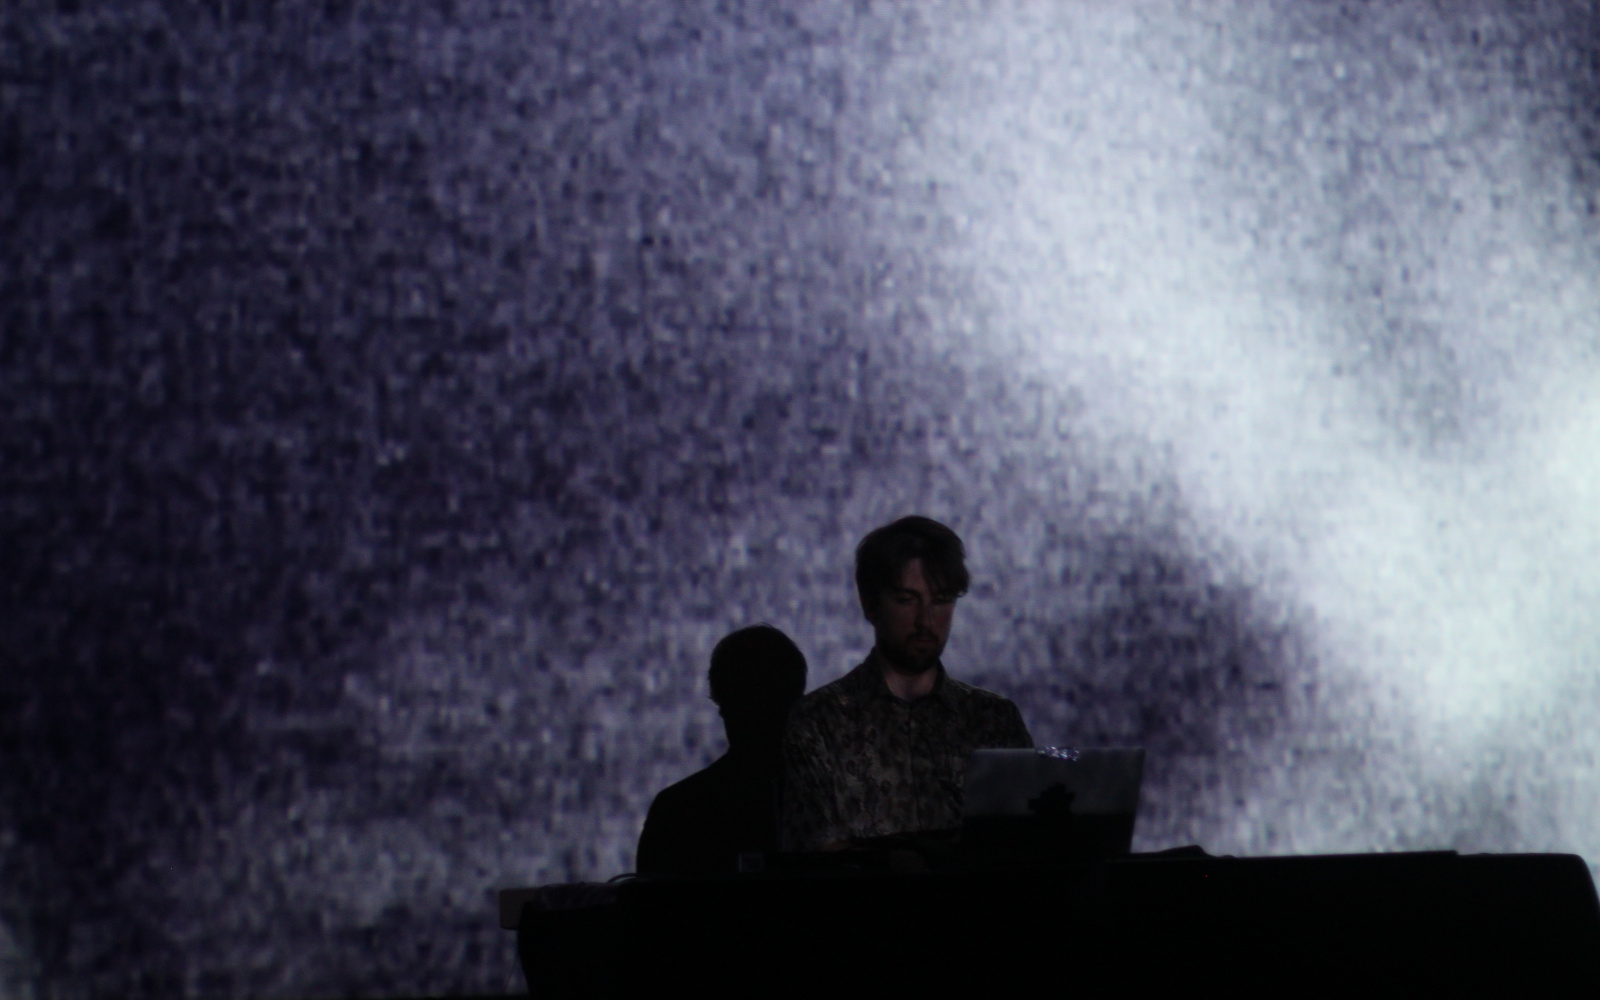 Mann auf der Bühne vor einem Laptop. Hintergrund ist in weißem Licht getaucht